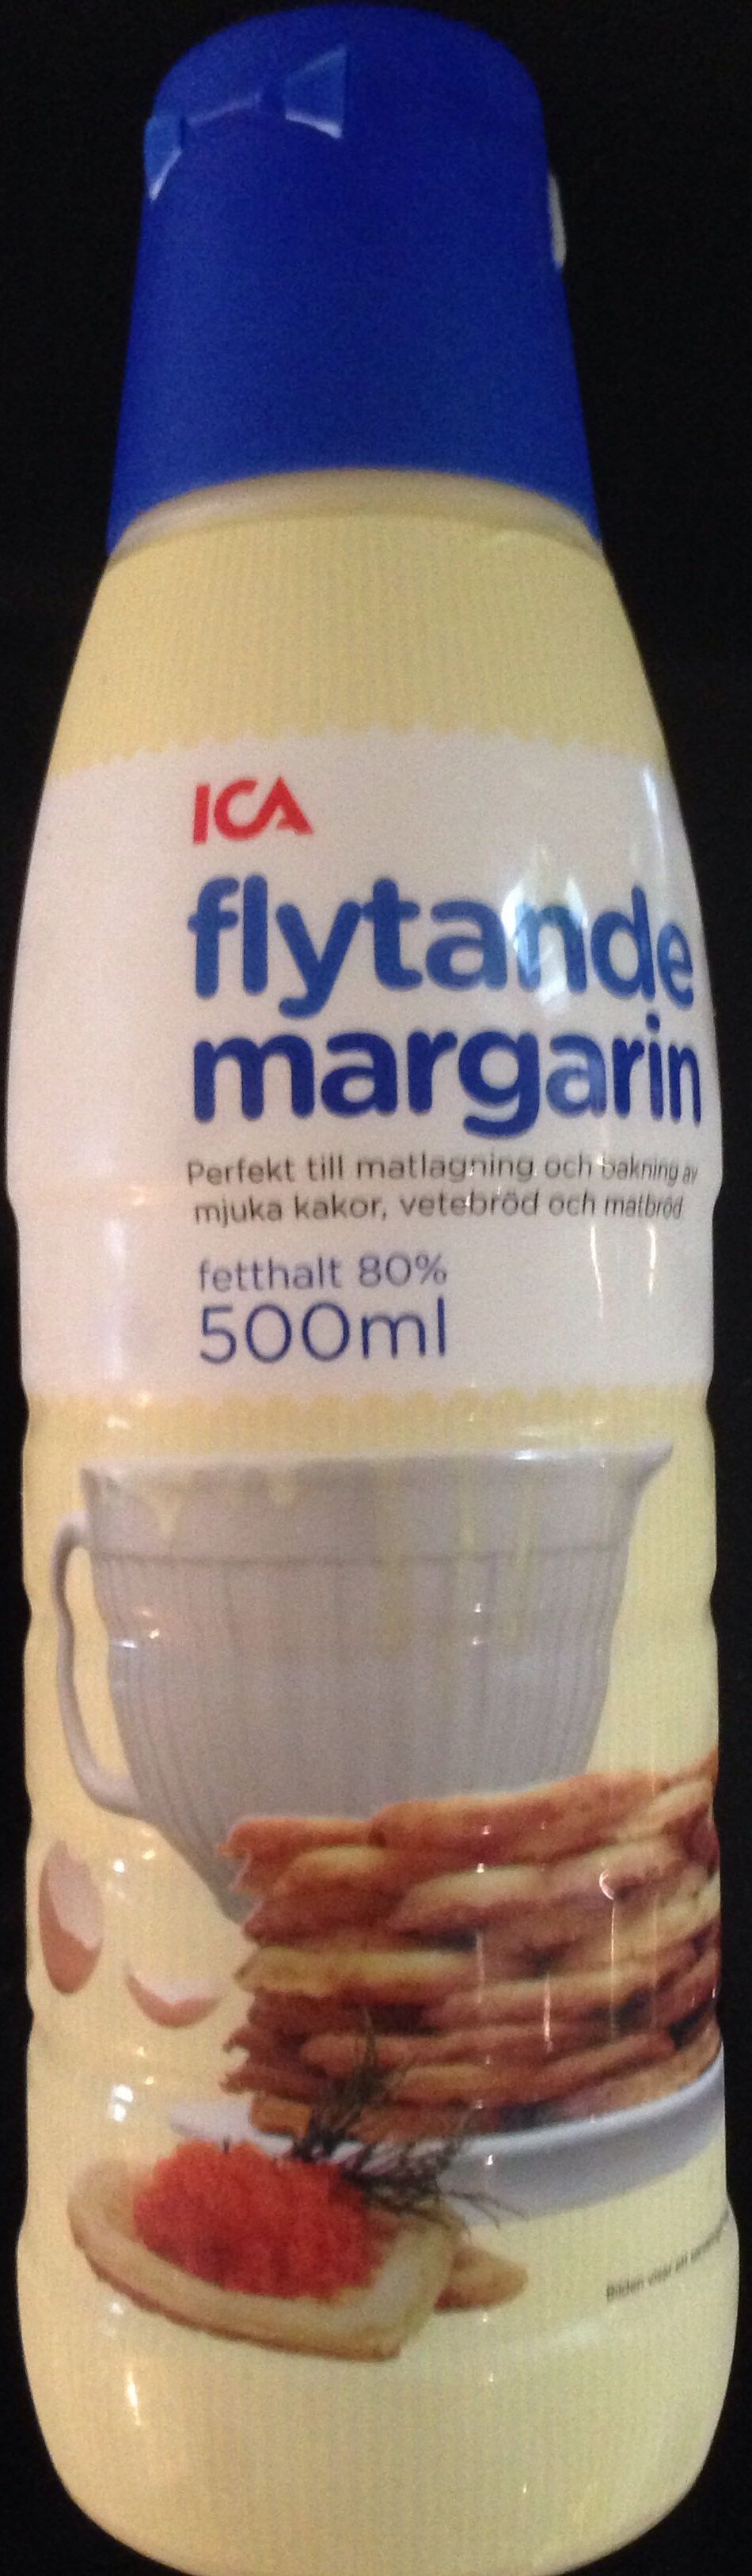 ICA flytande margarin - Produit - sv